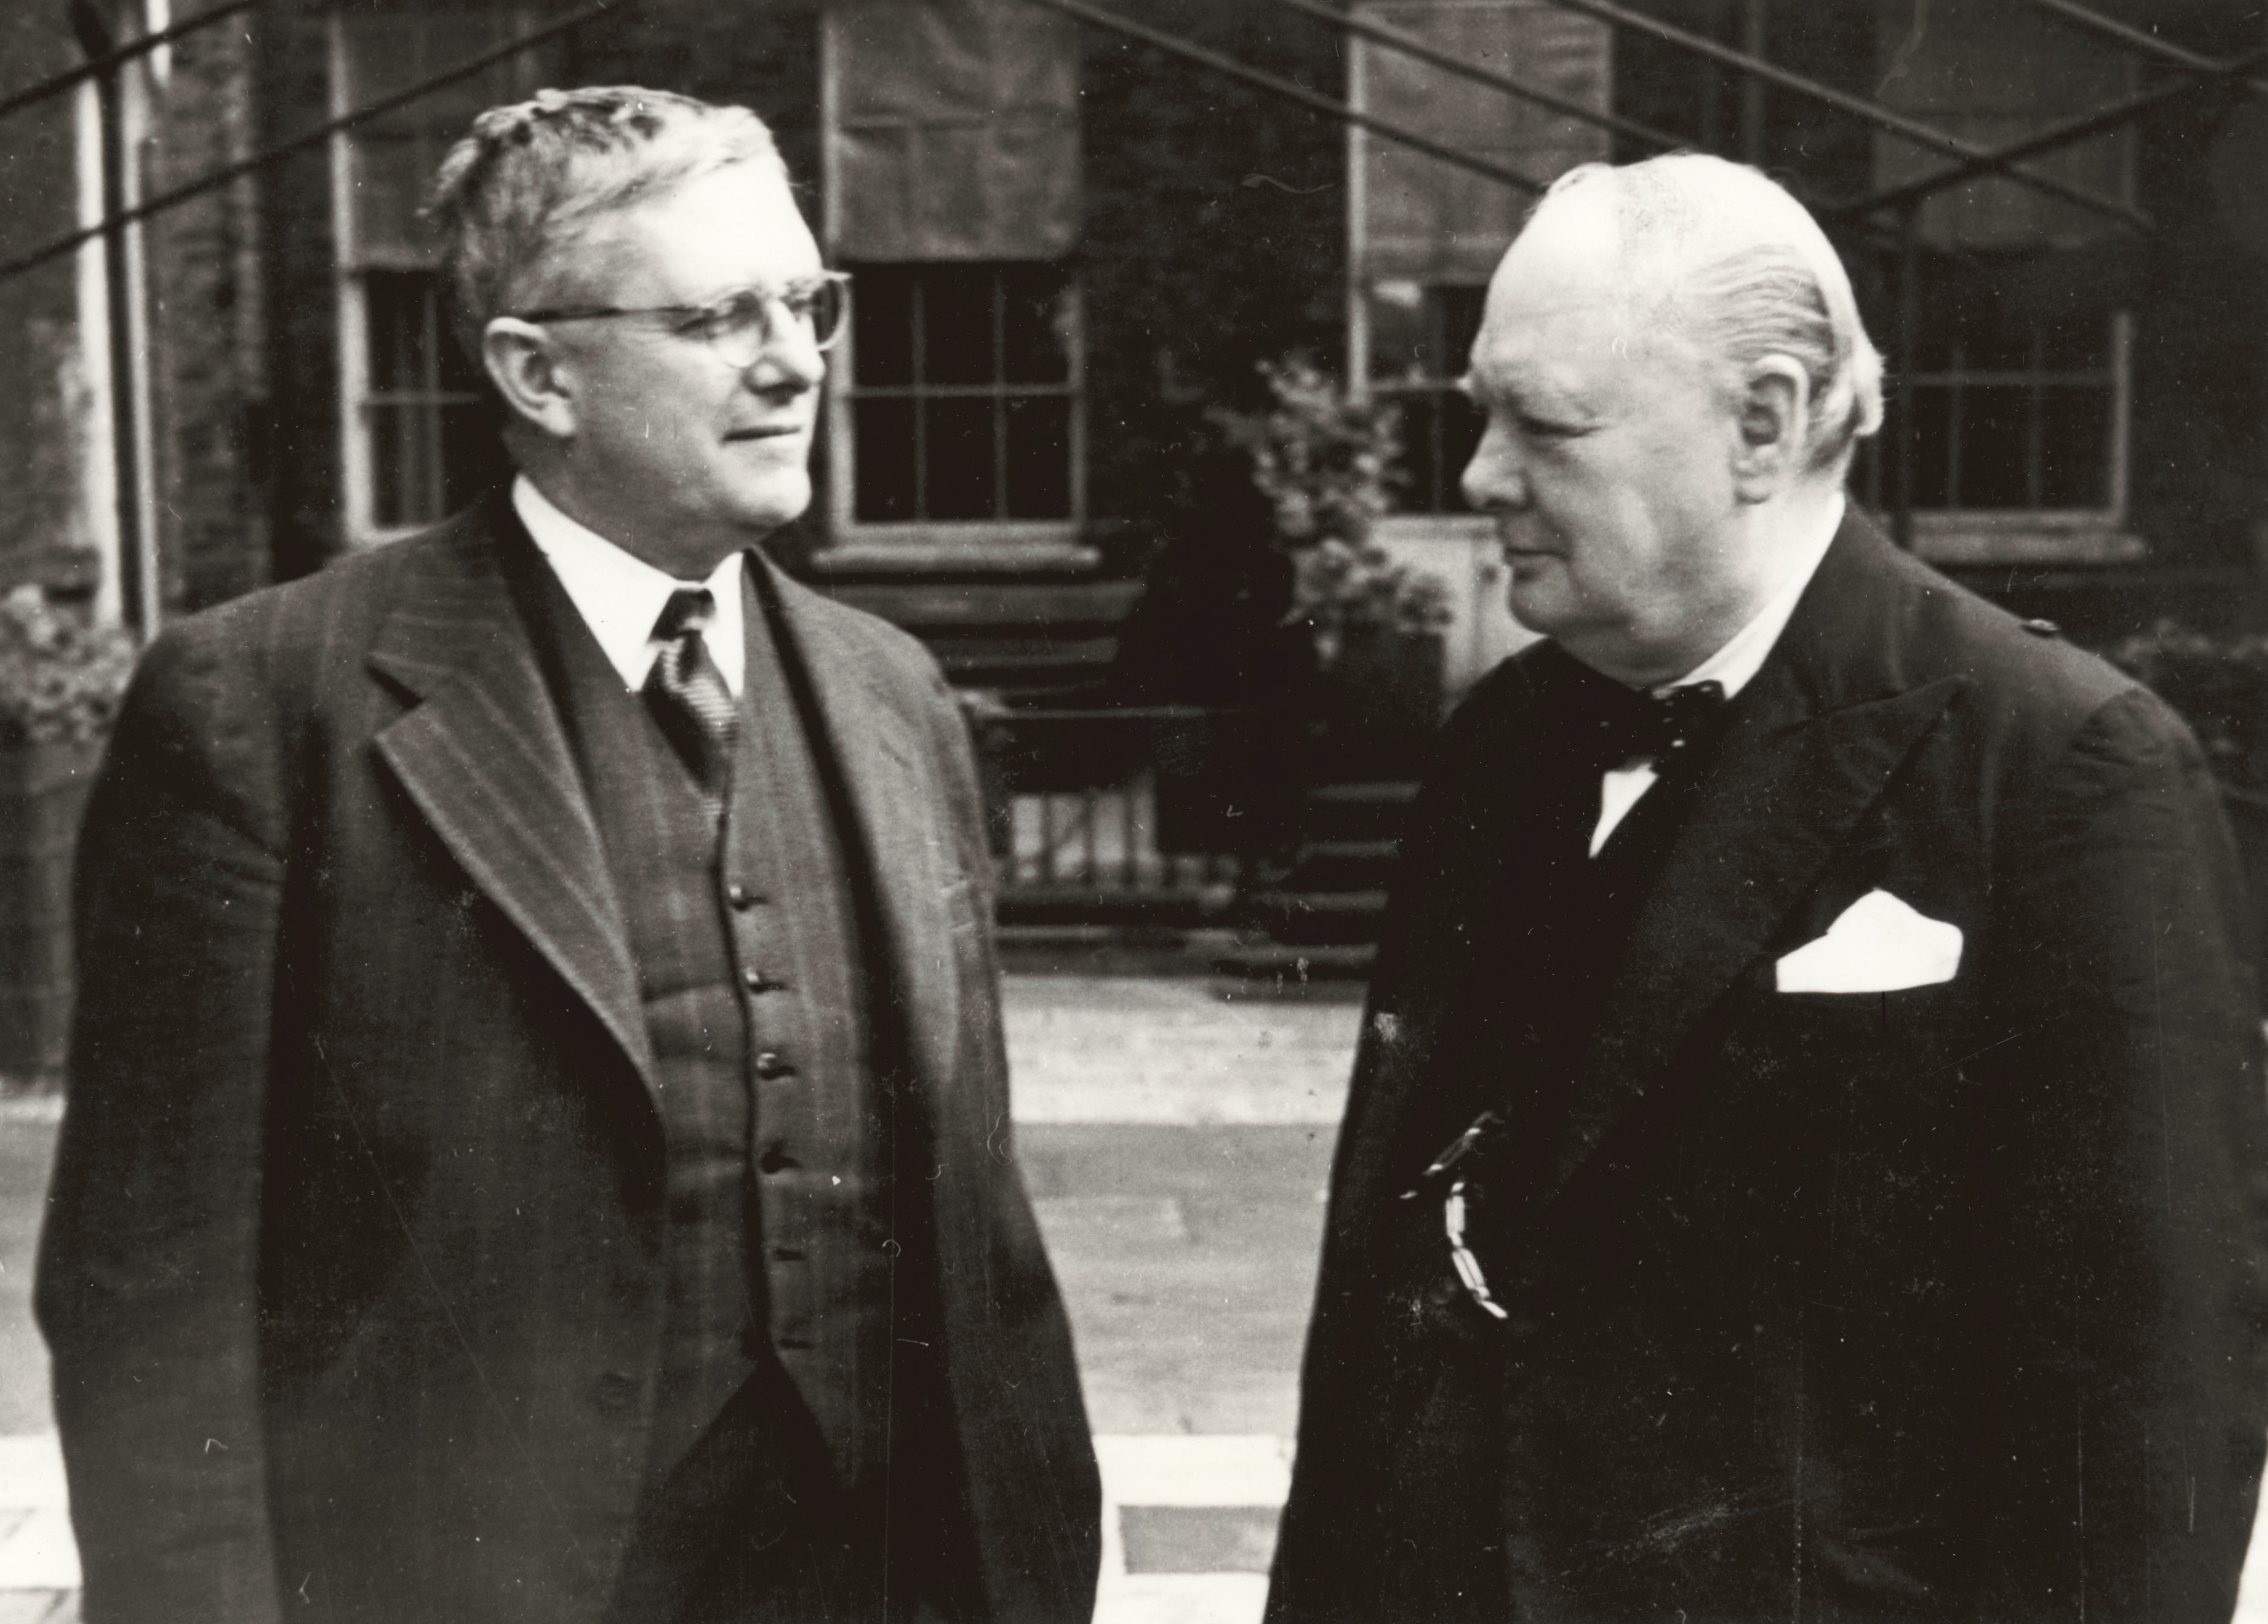 Australia’s Minister for External Affairs, Dr VH Evatt (left) with British Prime Minister Winston Churchill, London,1942or 1943.